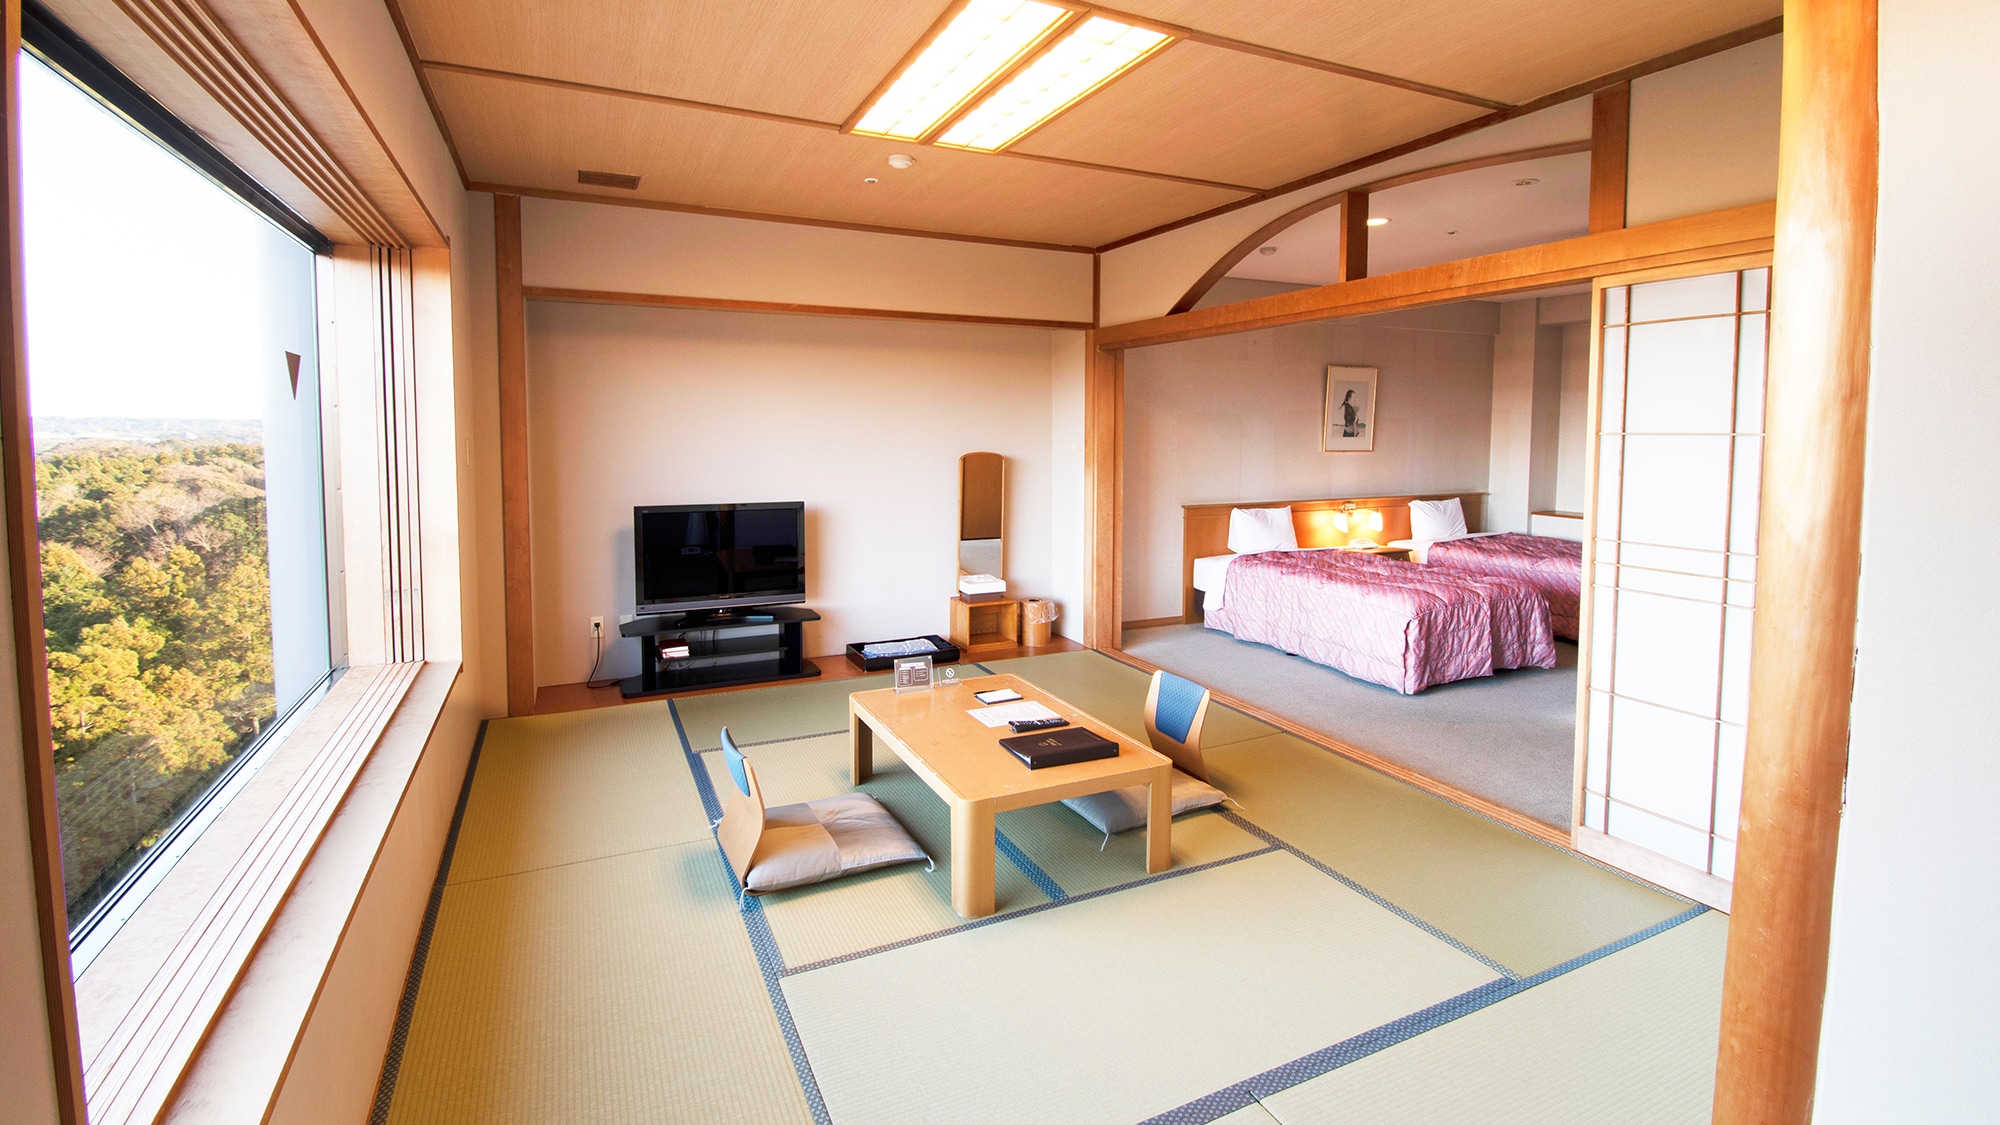 ◆ ห้องญี่ปุ่นและตะวันตก [ปีกเหนือ] 52.3 ตารางเมตร